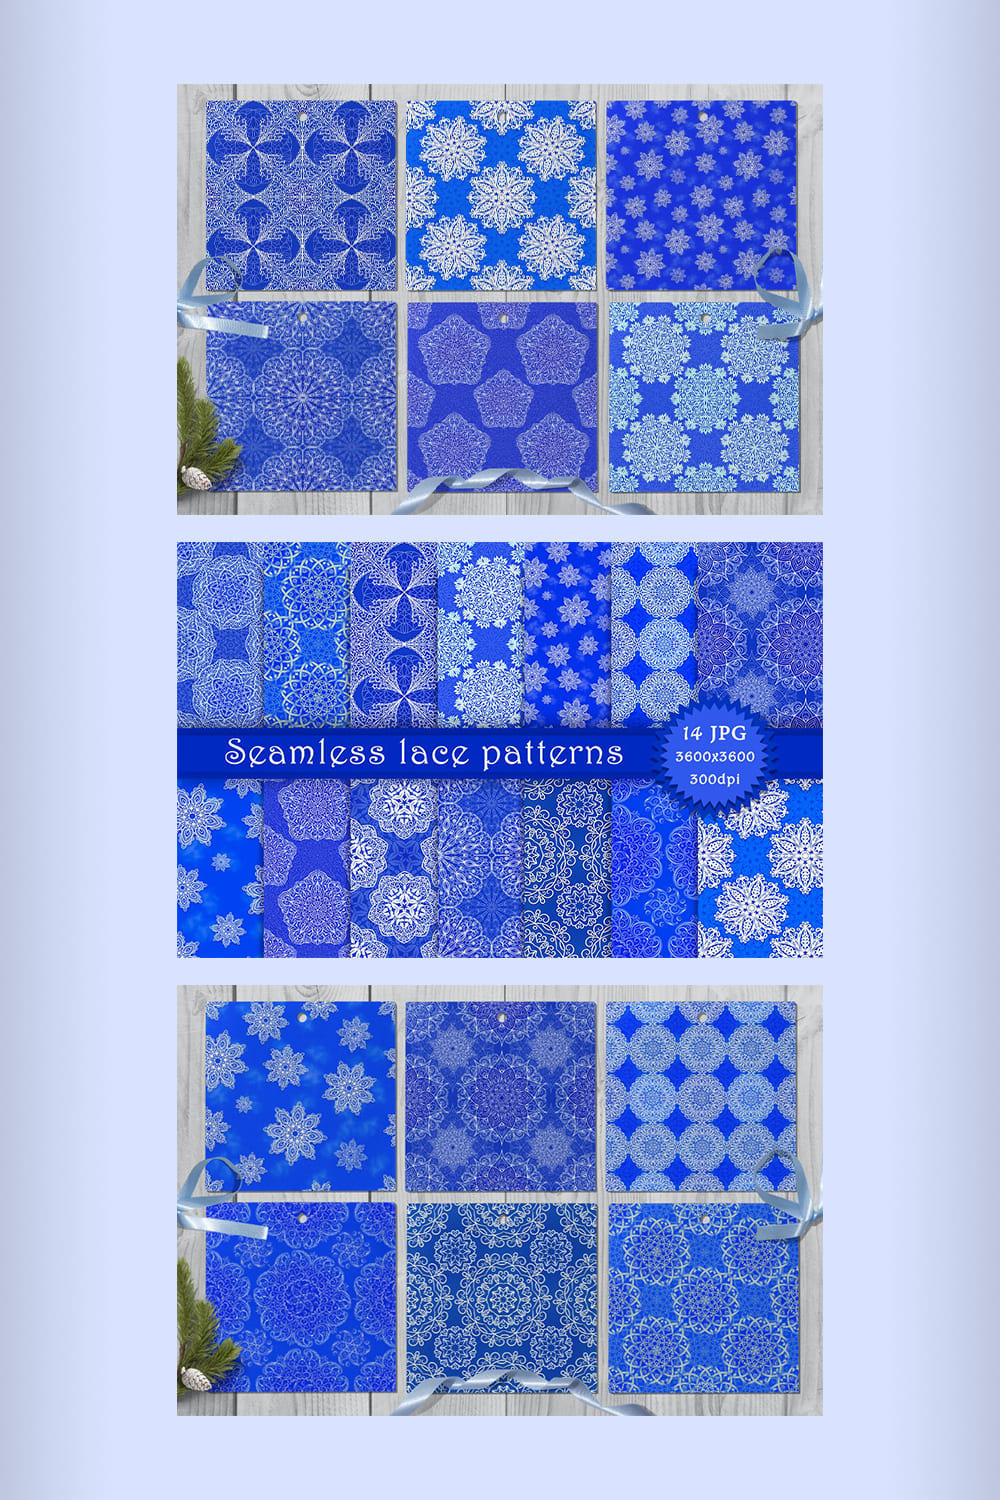 Seamless Lace Patterns - Pinterest.